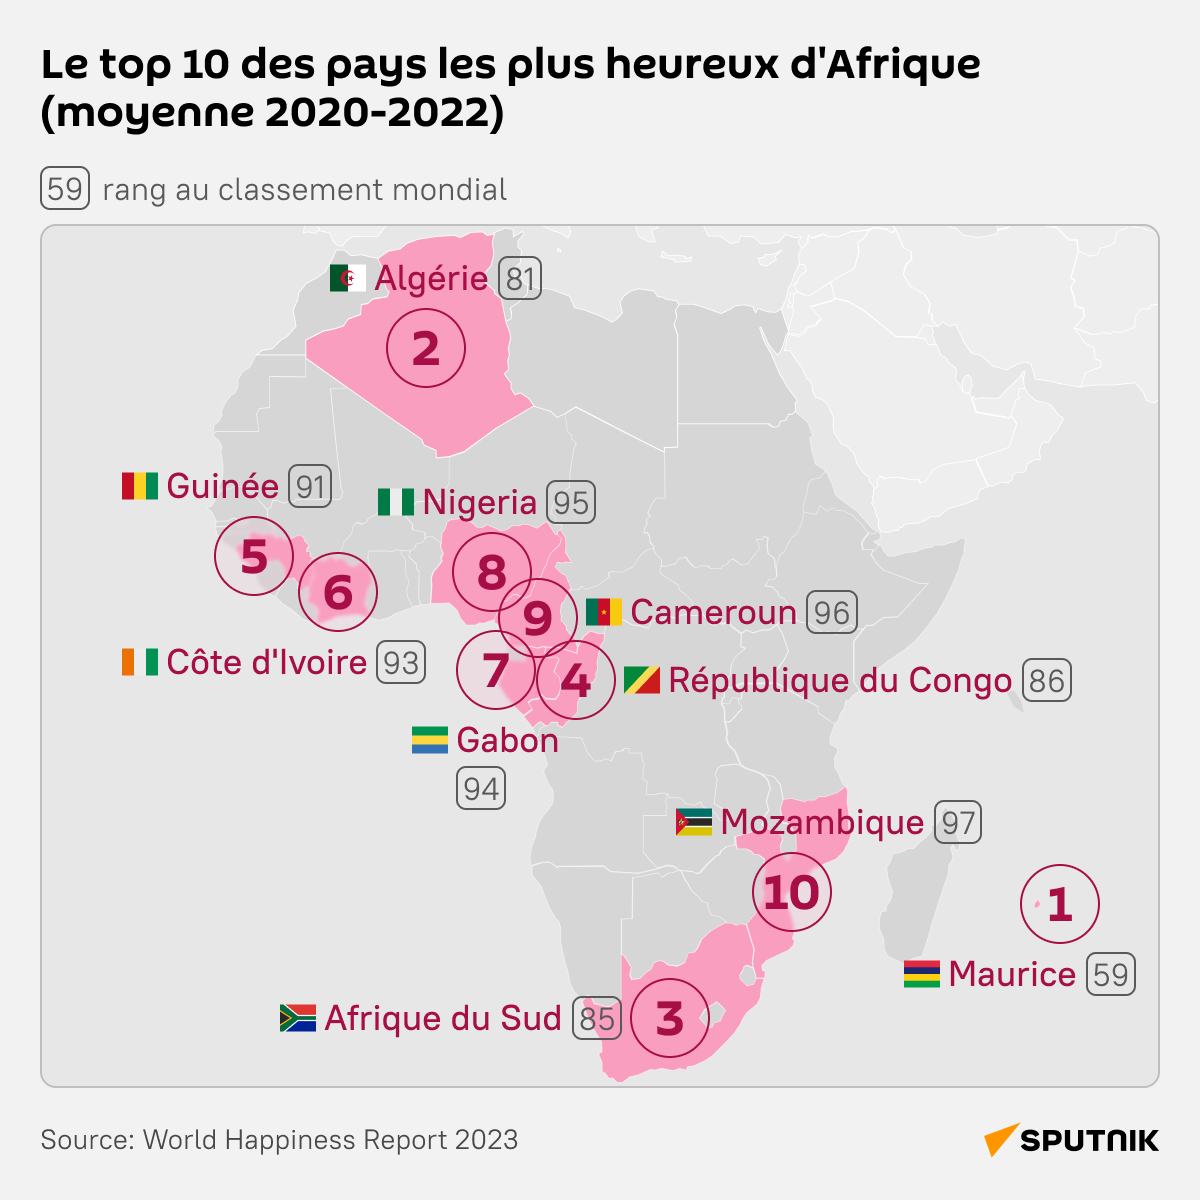 Le top 10 des pays les plus heureux d'Afrique - Sputnik Afrique